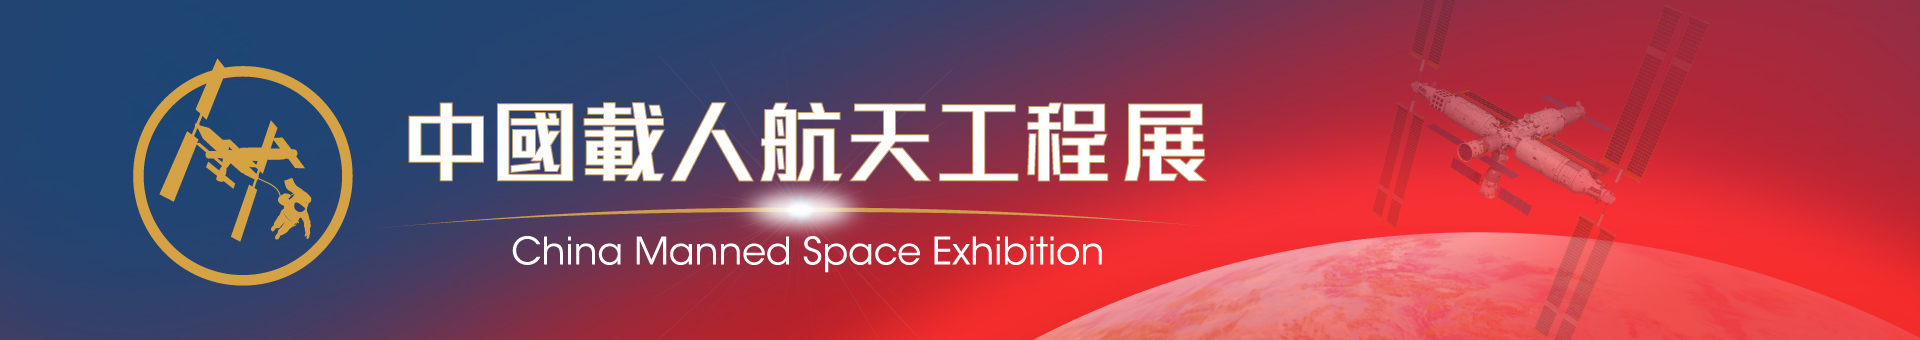 中国载人航天工程展